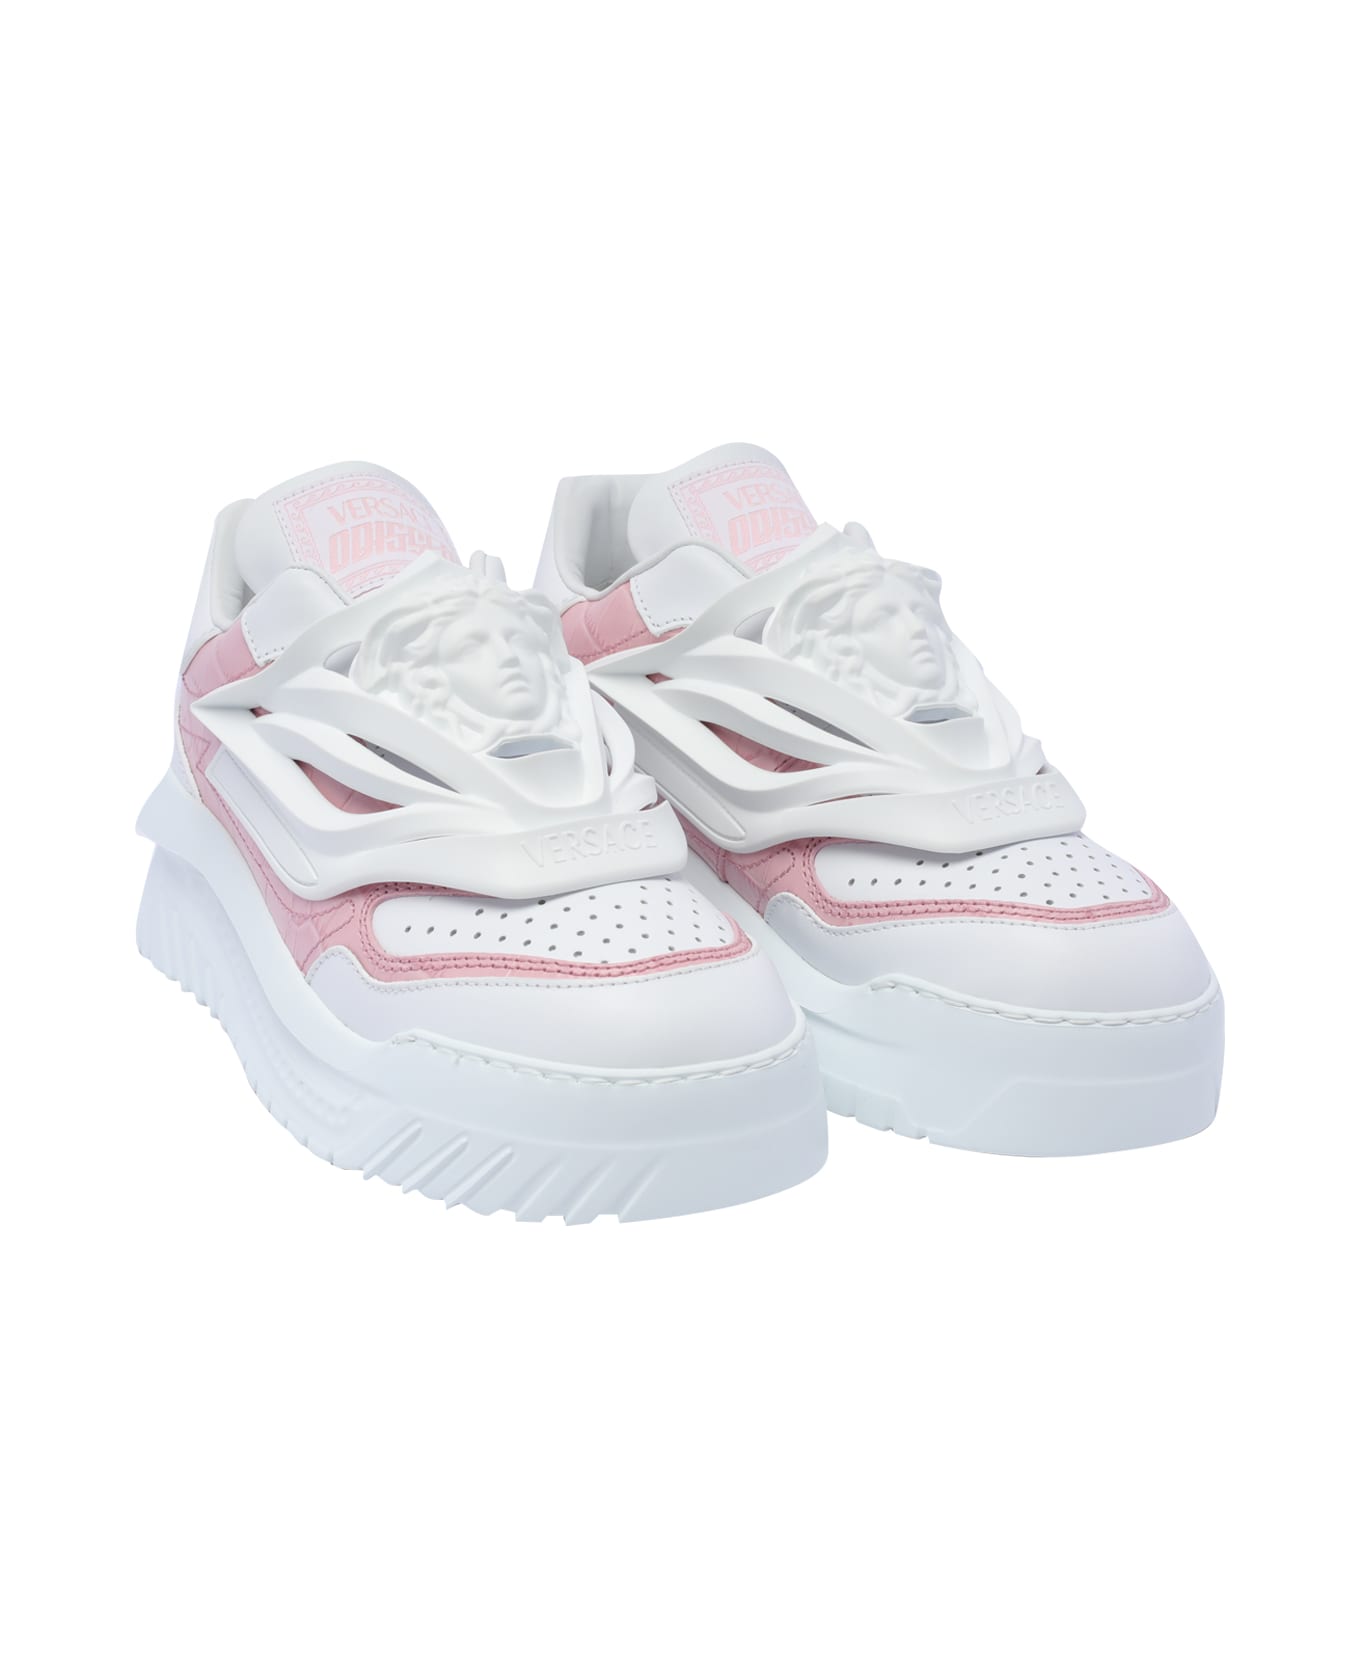 Versace Odissea Sneakers - Pink スニーカー